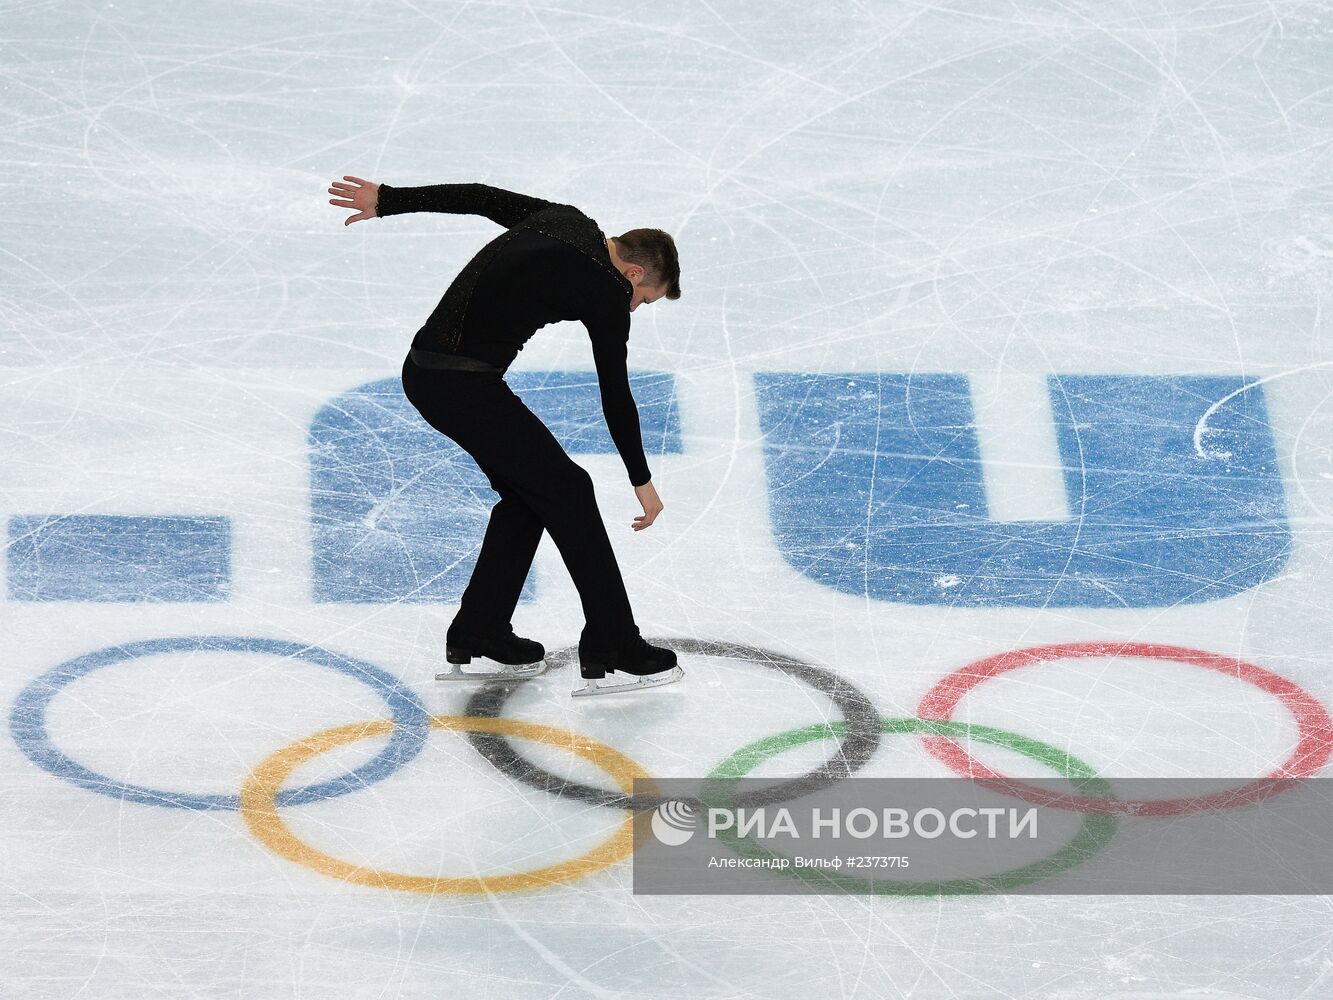 Олимпиада 2014. Фигурное катание. Мужчины. Произвольная программа